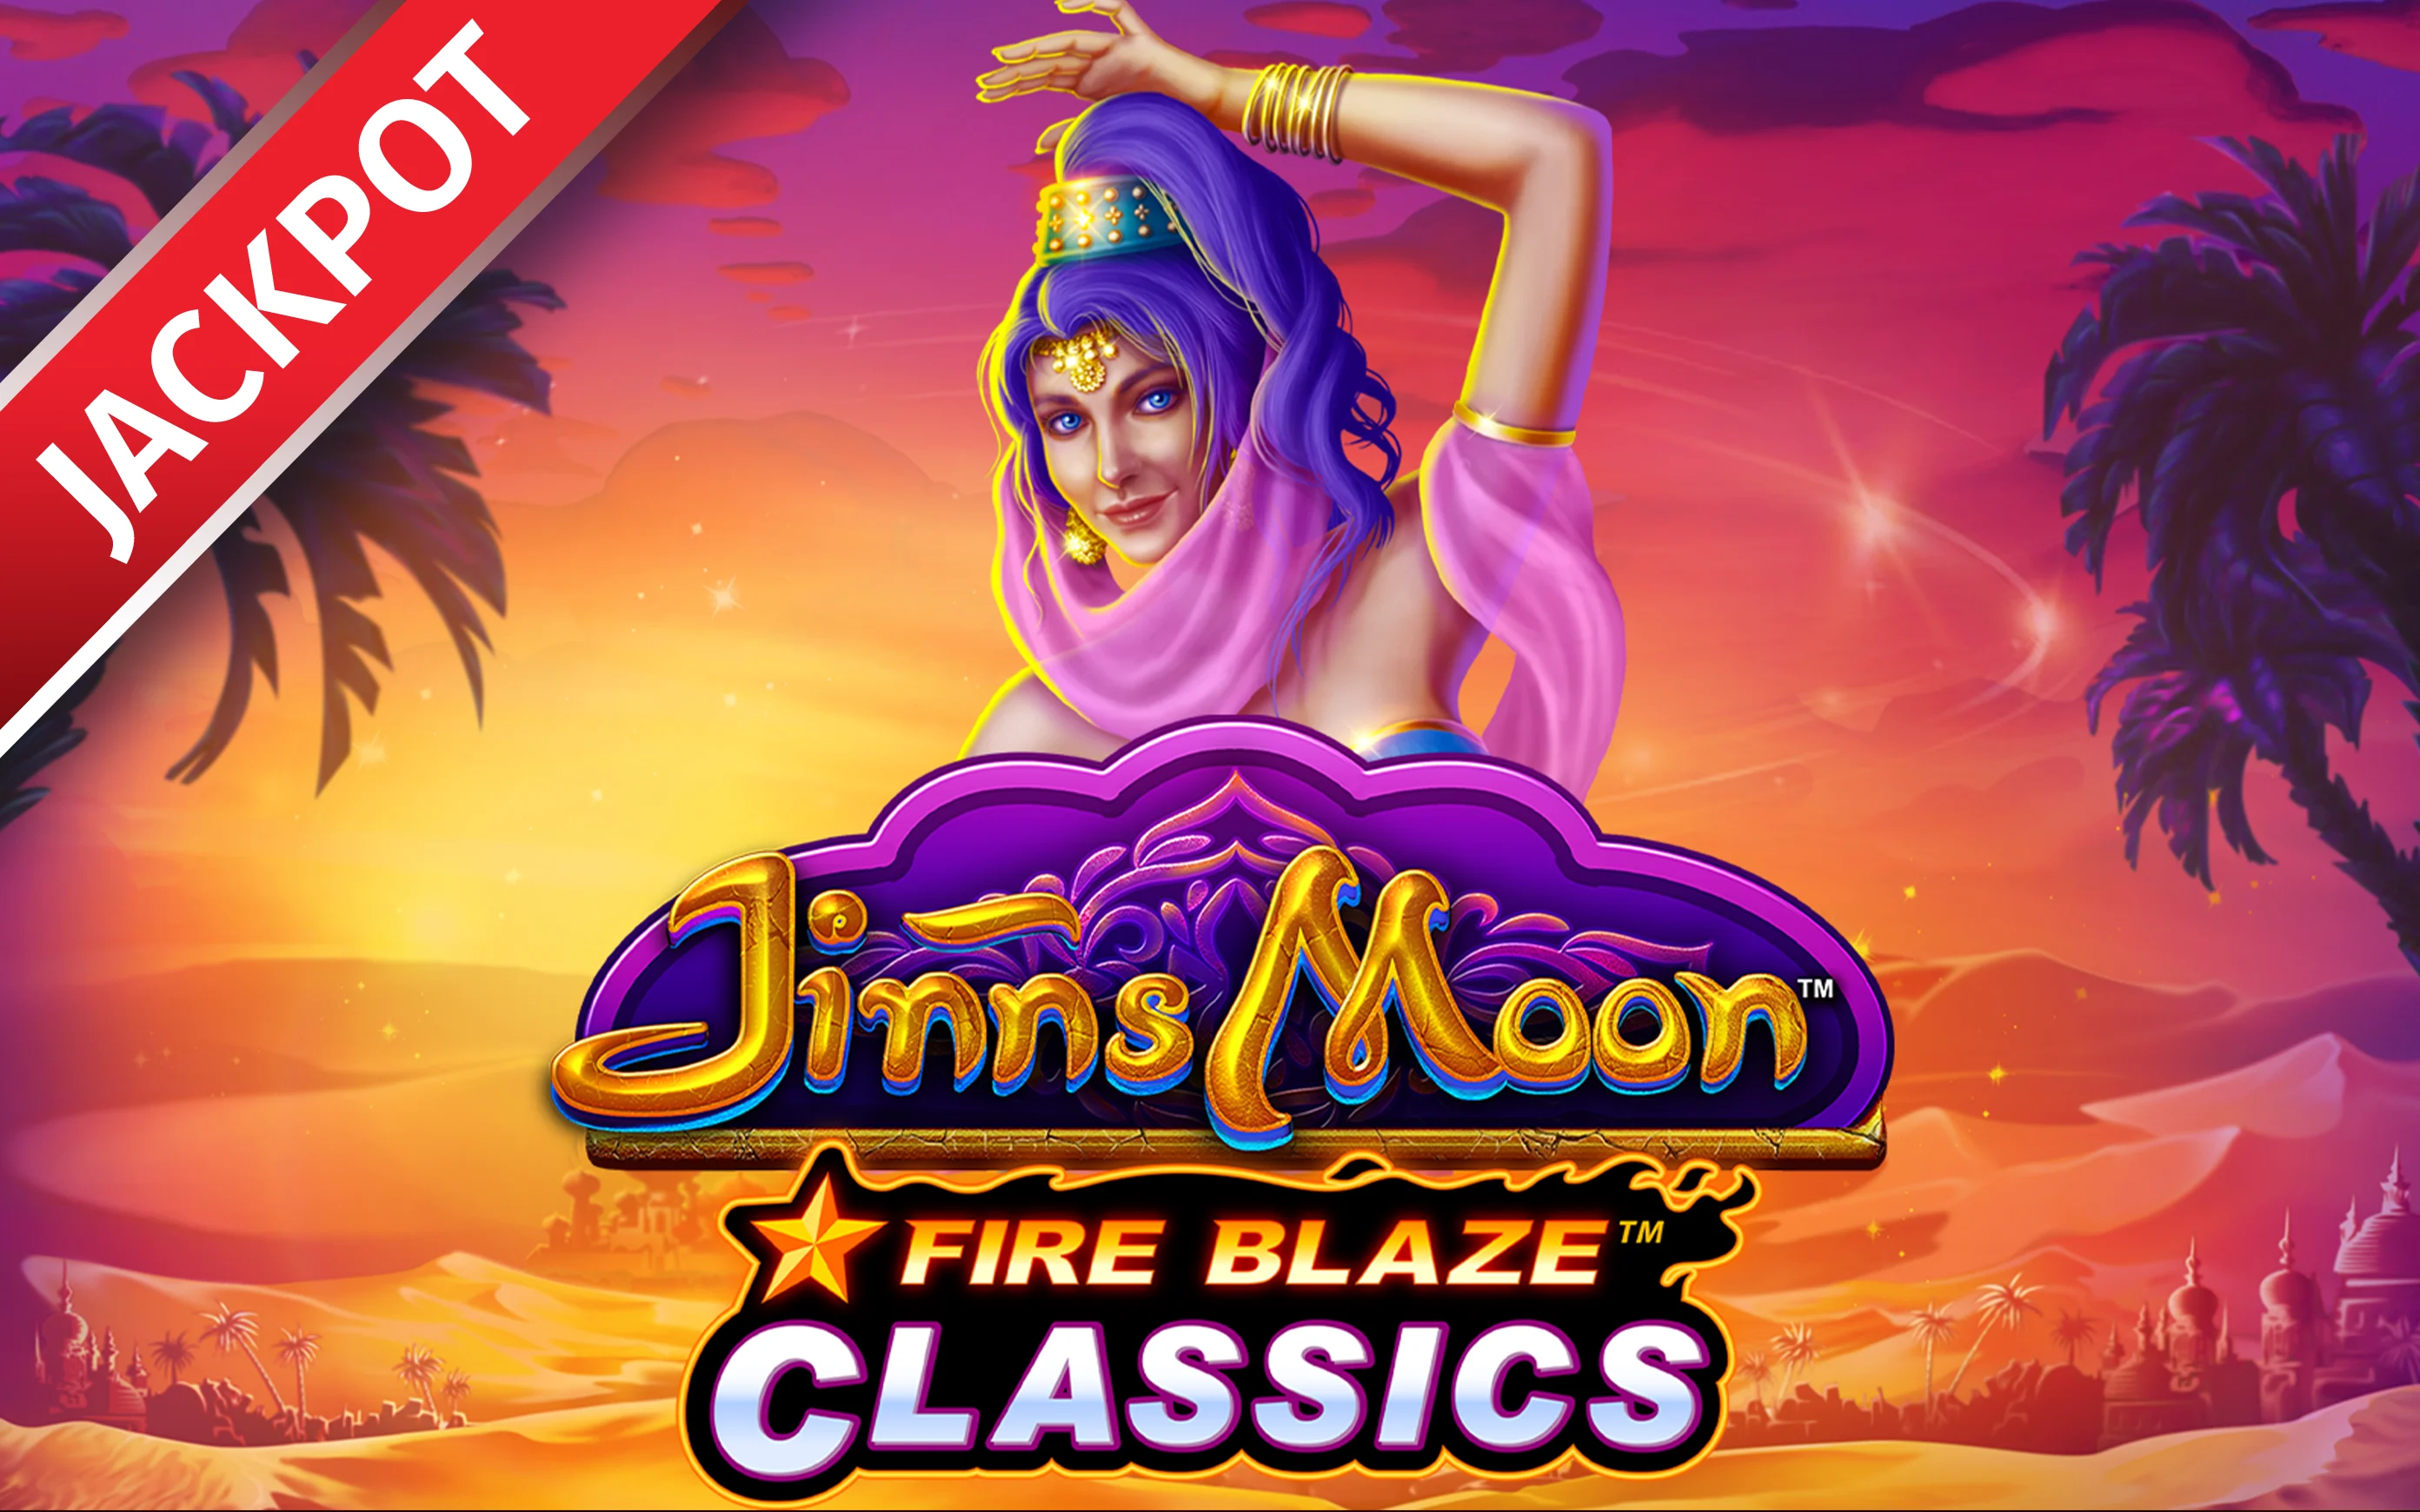 Juega a Fire Blaze: Jinns Moon en el casino en línea de Starcasino.be